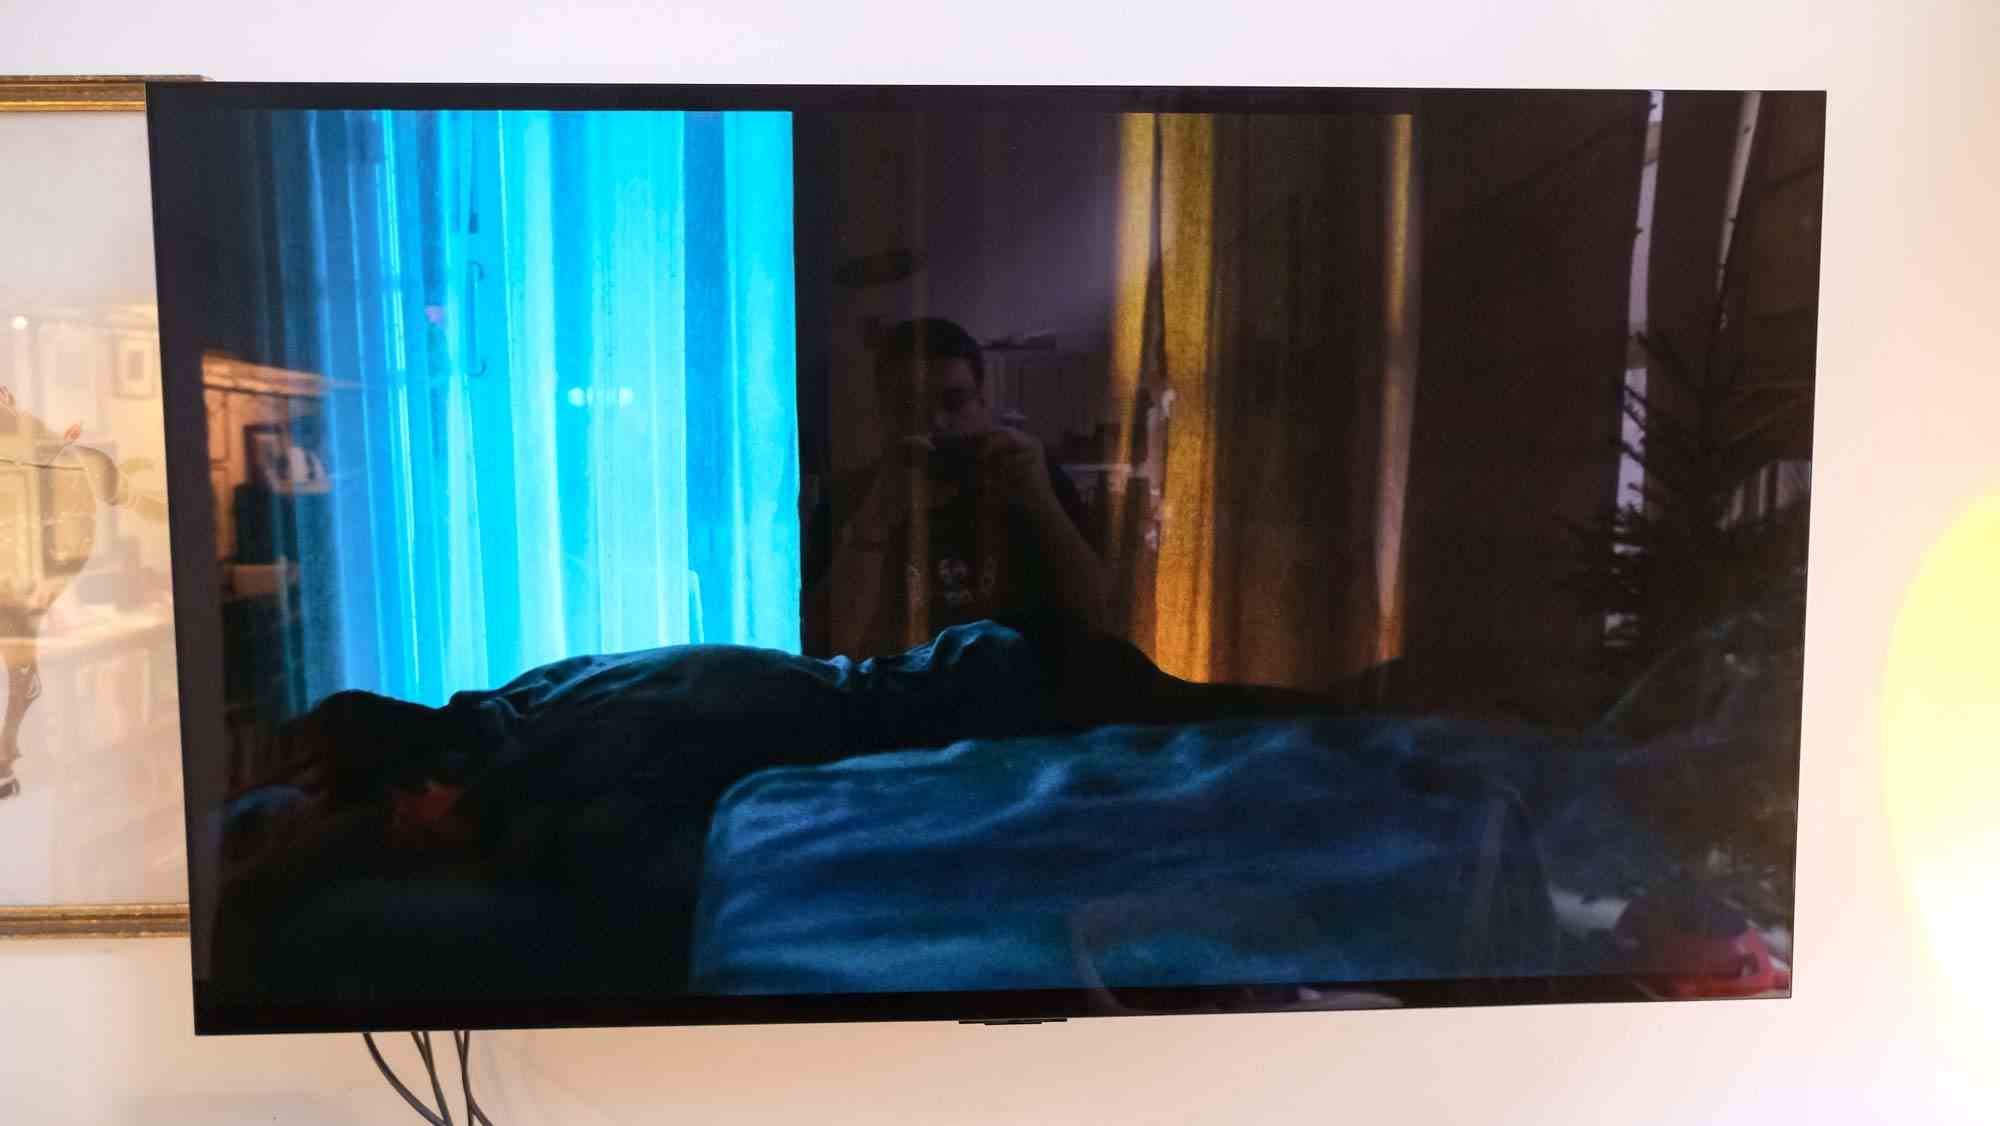 Lors de la projection du film Aftersun, le téléviseur OLED LG C2 a des reflets sur le côté droit de l'écran